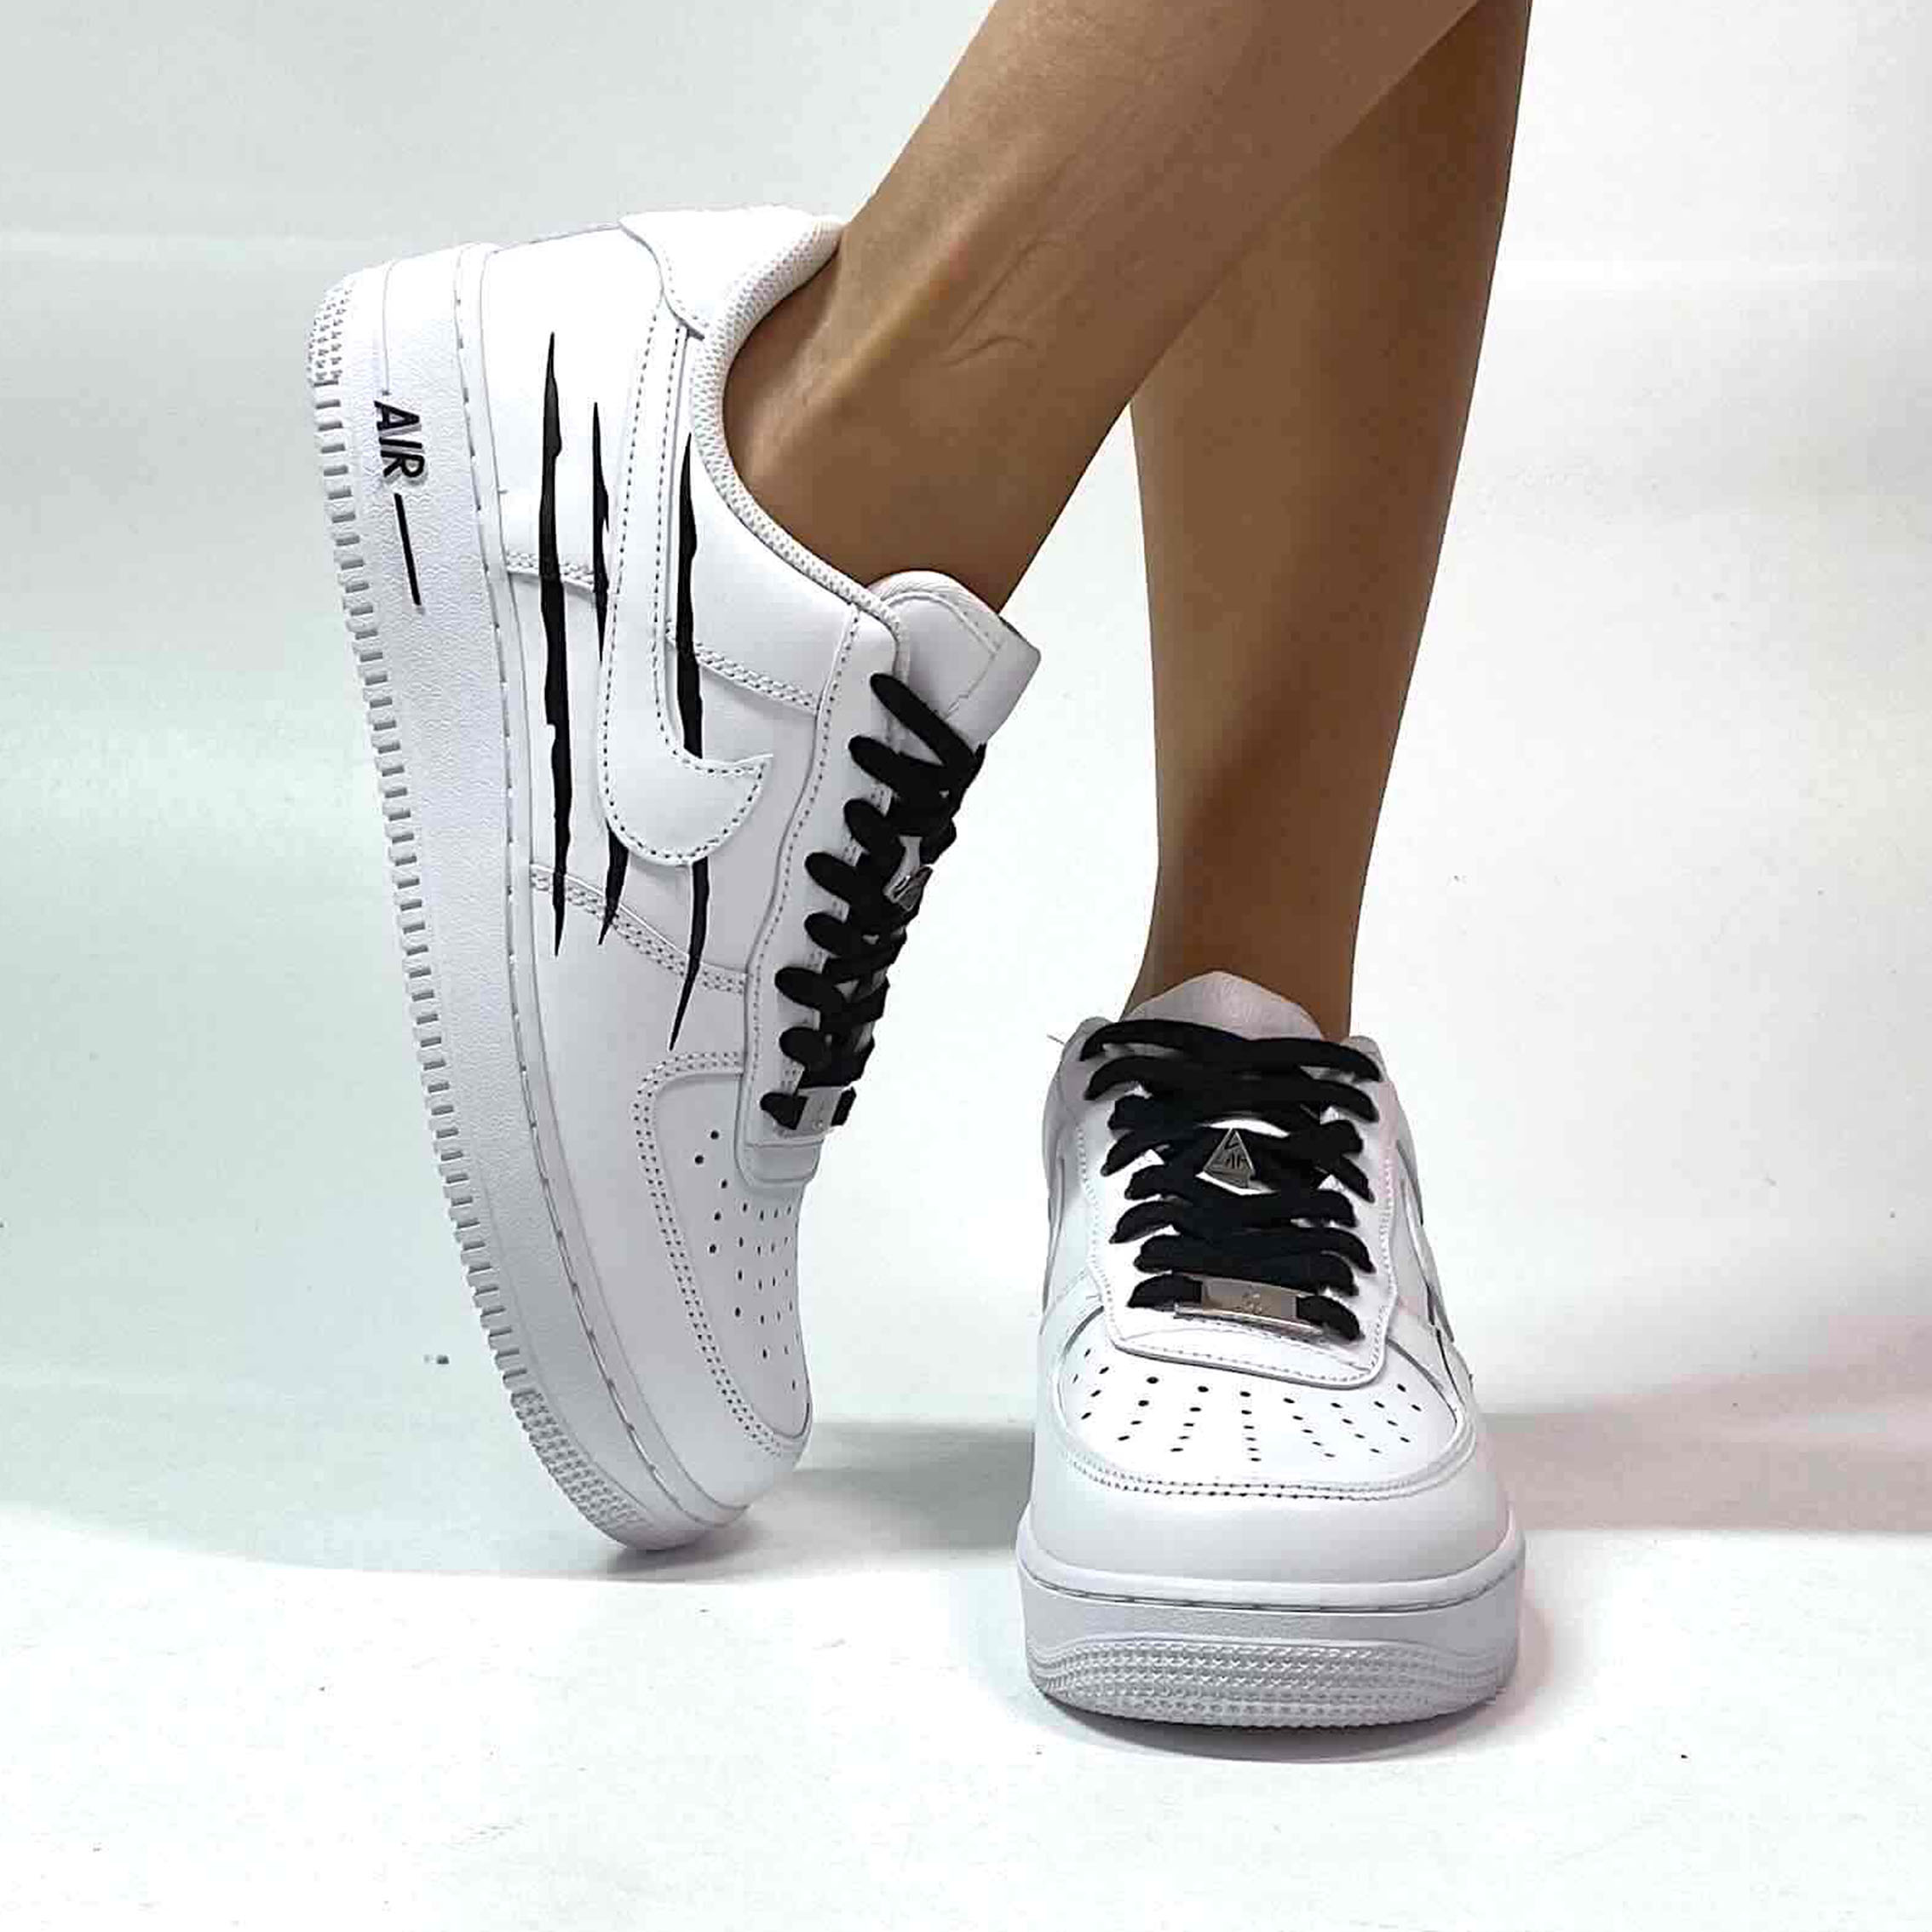 Scarpe personalizzate Nike Air Force 1 basse con lacci in corda nera  bianche UNI